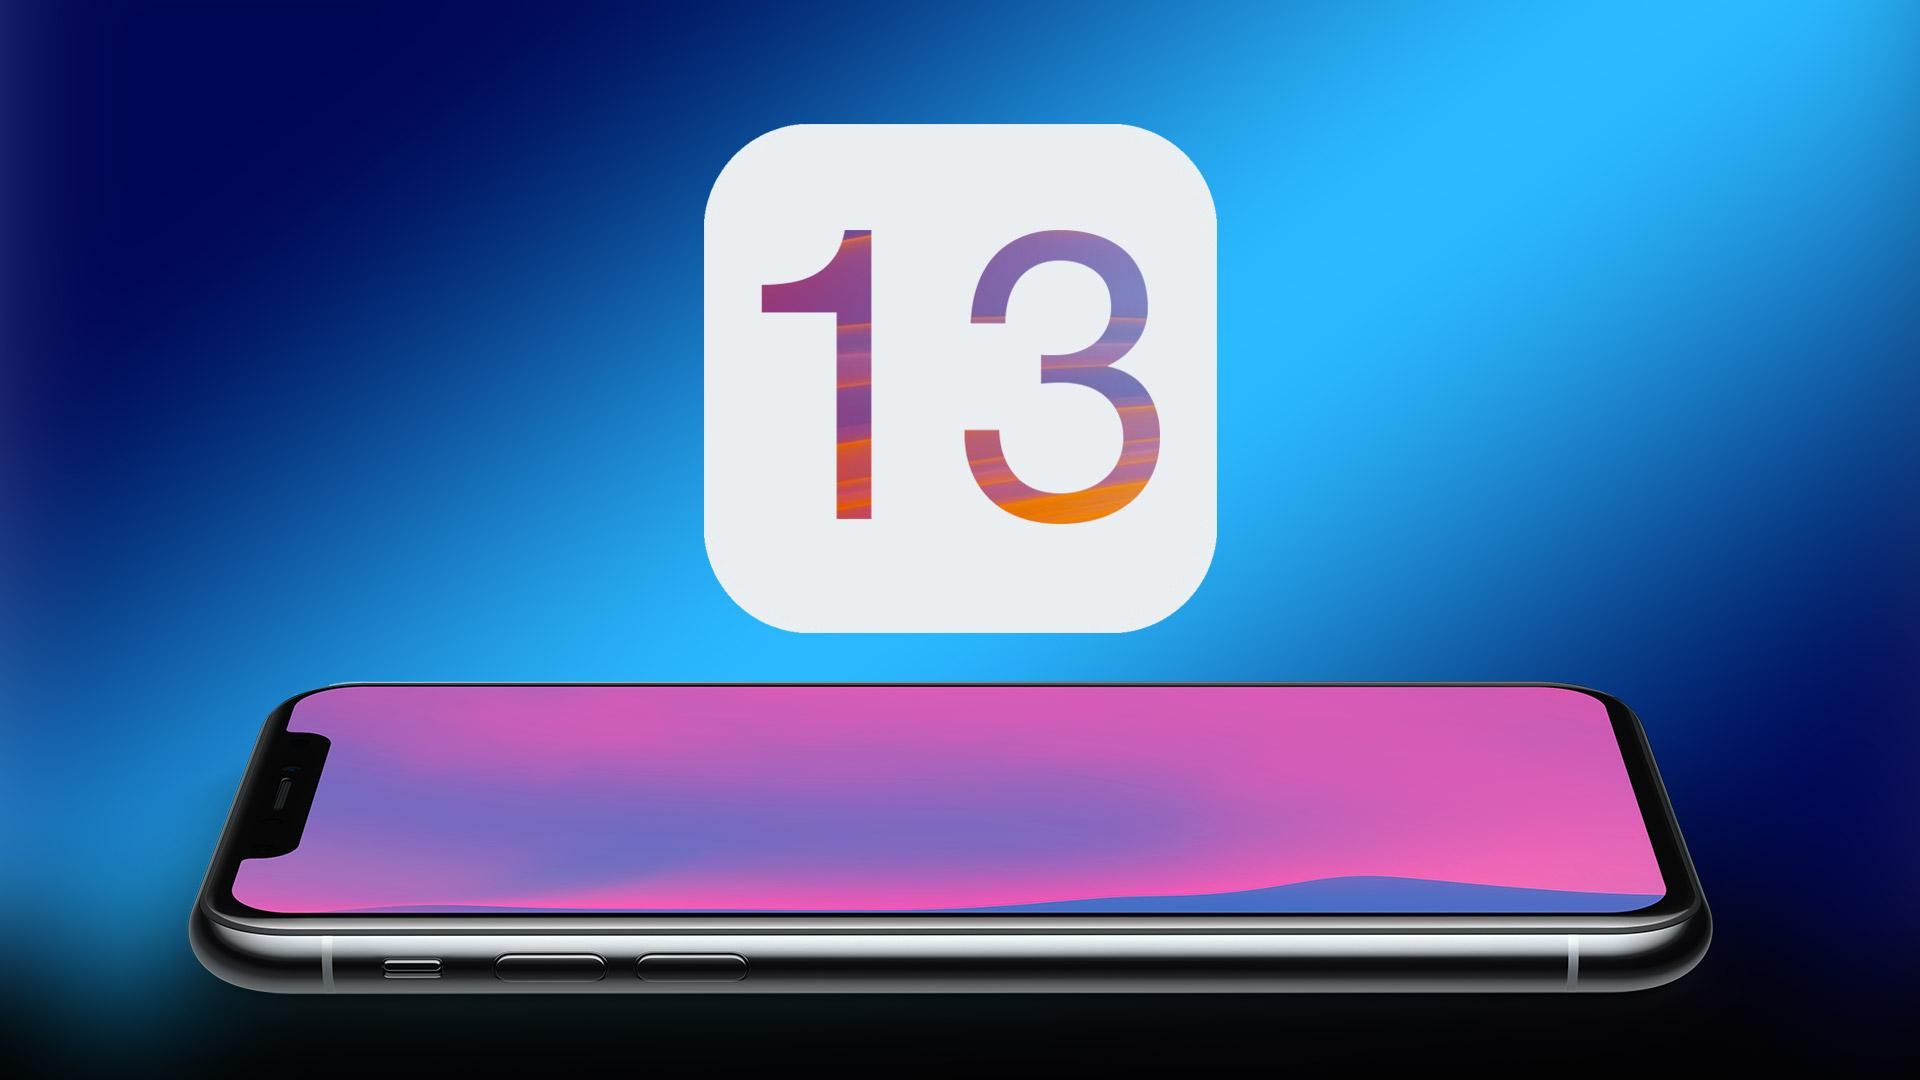 Операционную систему iOS 13 представили официально - что нового